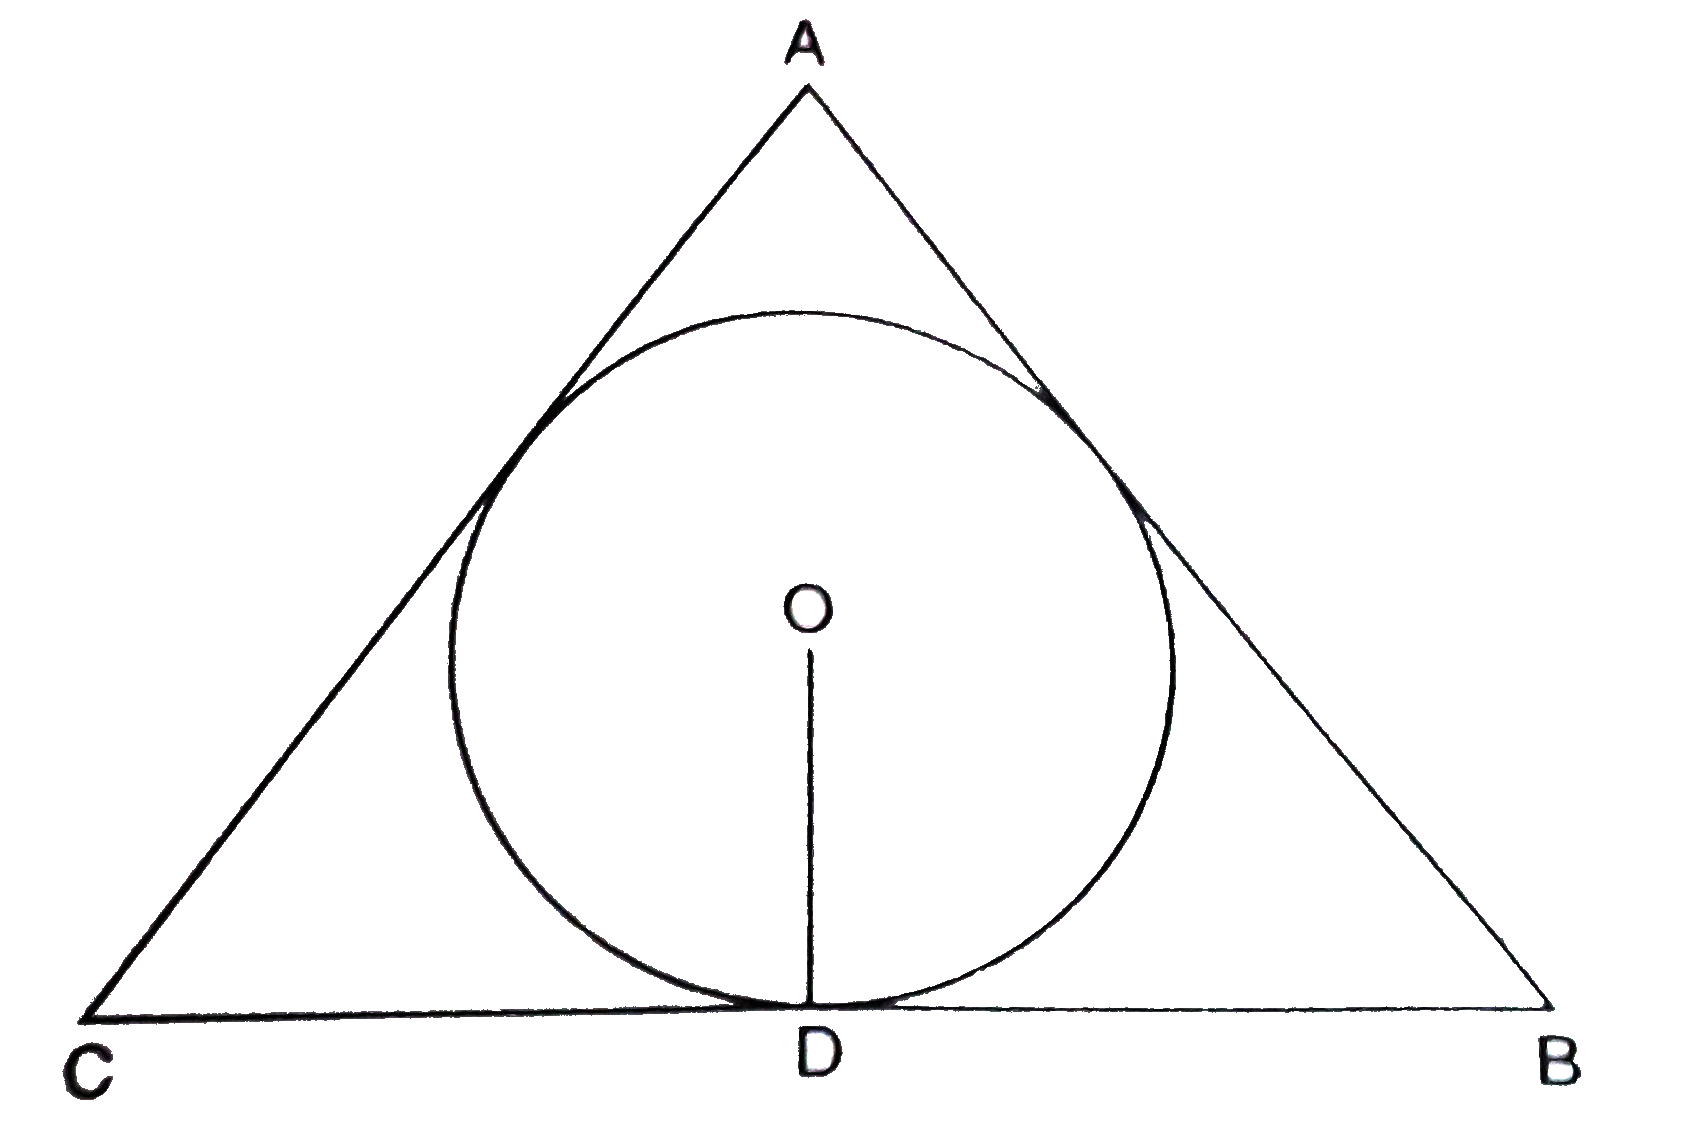 4 सेंमी त्रिज्या वाले एक वृत्त के परिगत एक त्रिभुज ABC इस प्रकार खींचा गया कि रेखाखण्ड BD और DC, जिनमें स्पर्श बिन्दु D द्वारा BC विभाजित है, की लम्बाईयाँ क्रमशः 8 सेमी और 6 सेमी हैं। यदि त्रिभुज ABC का क्षेत्रफल 84 सेमी